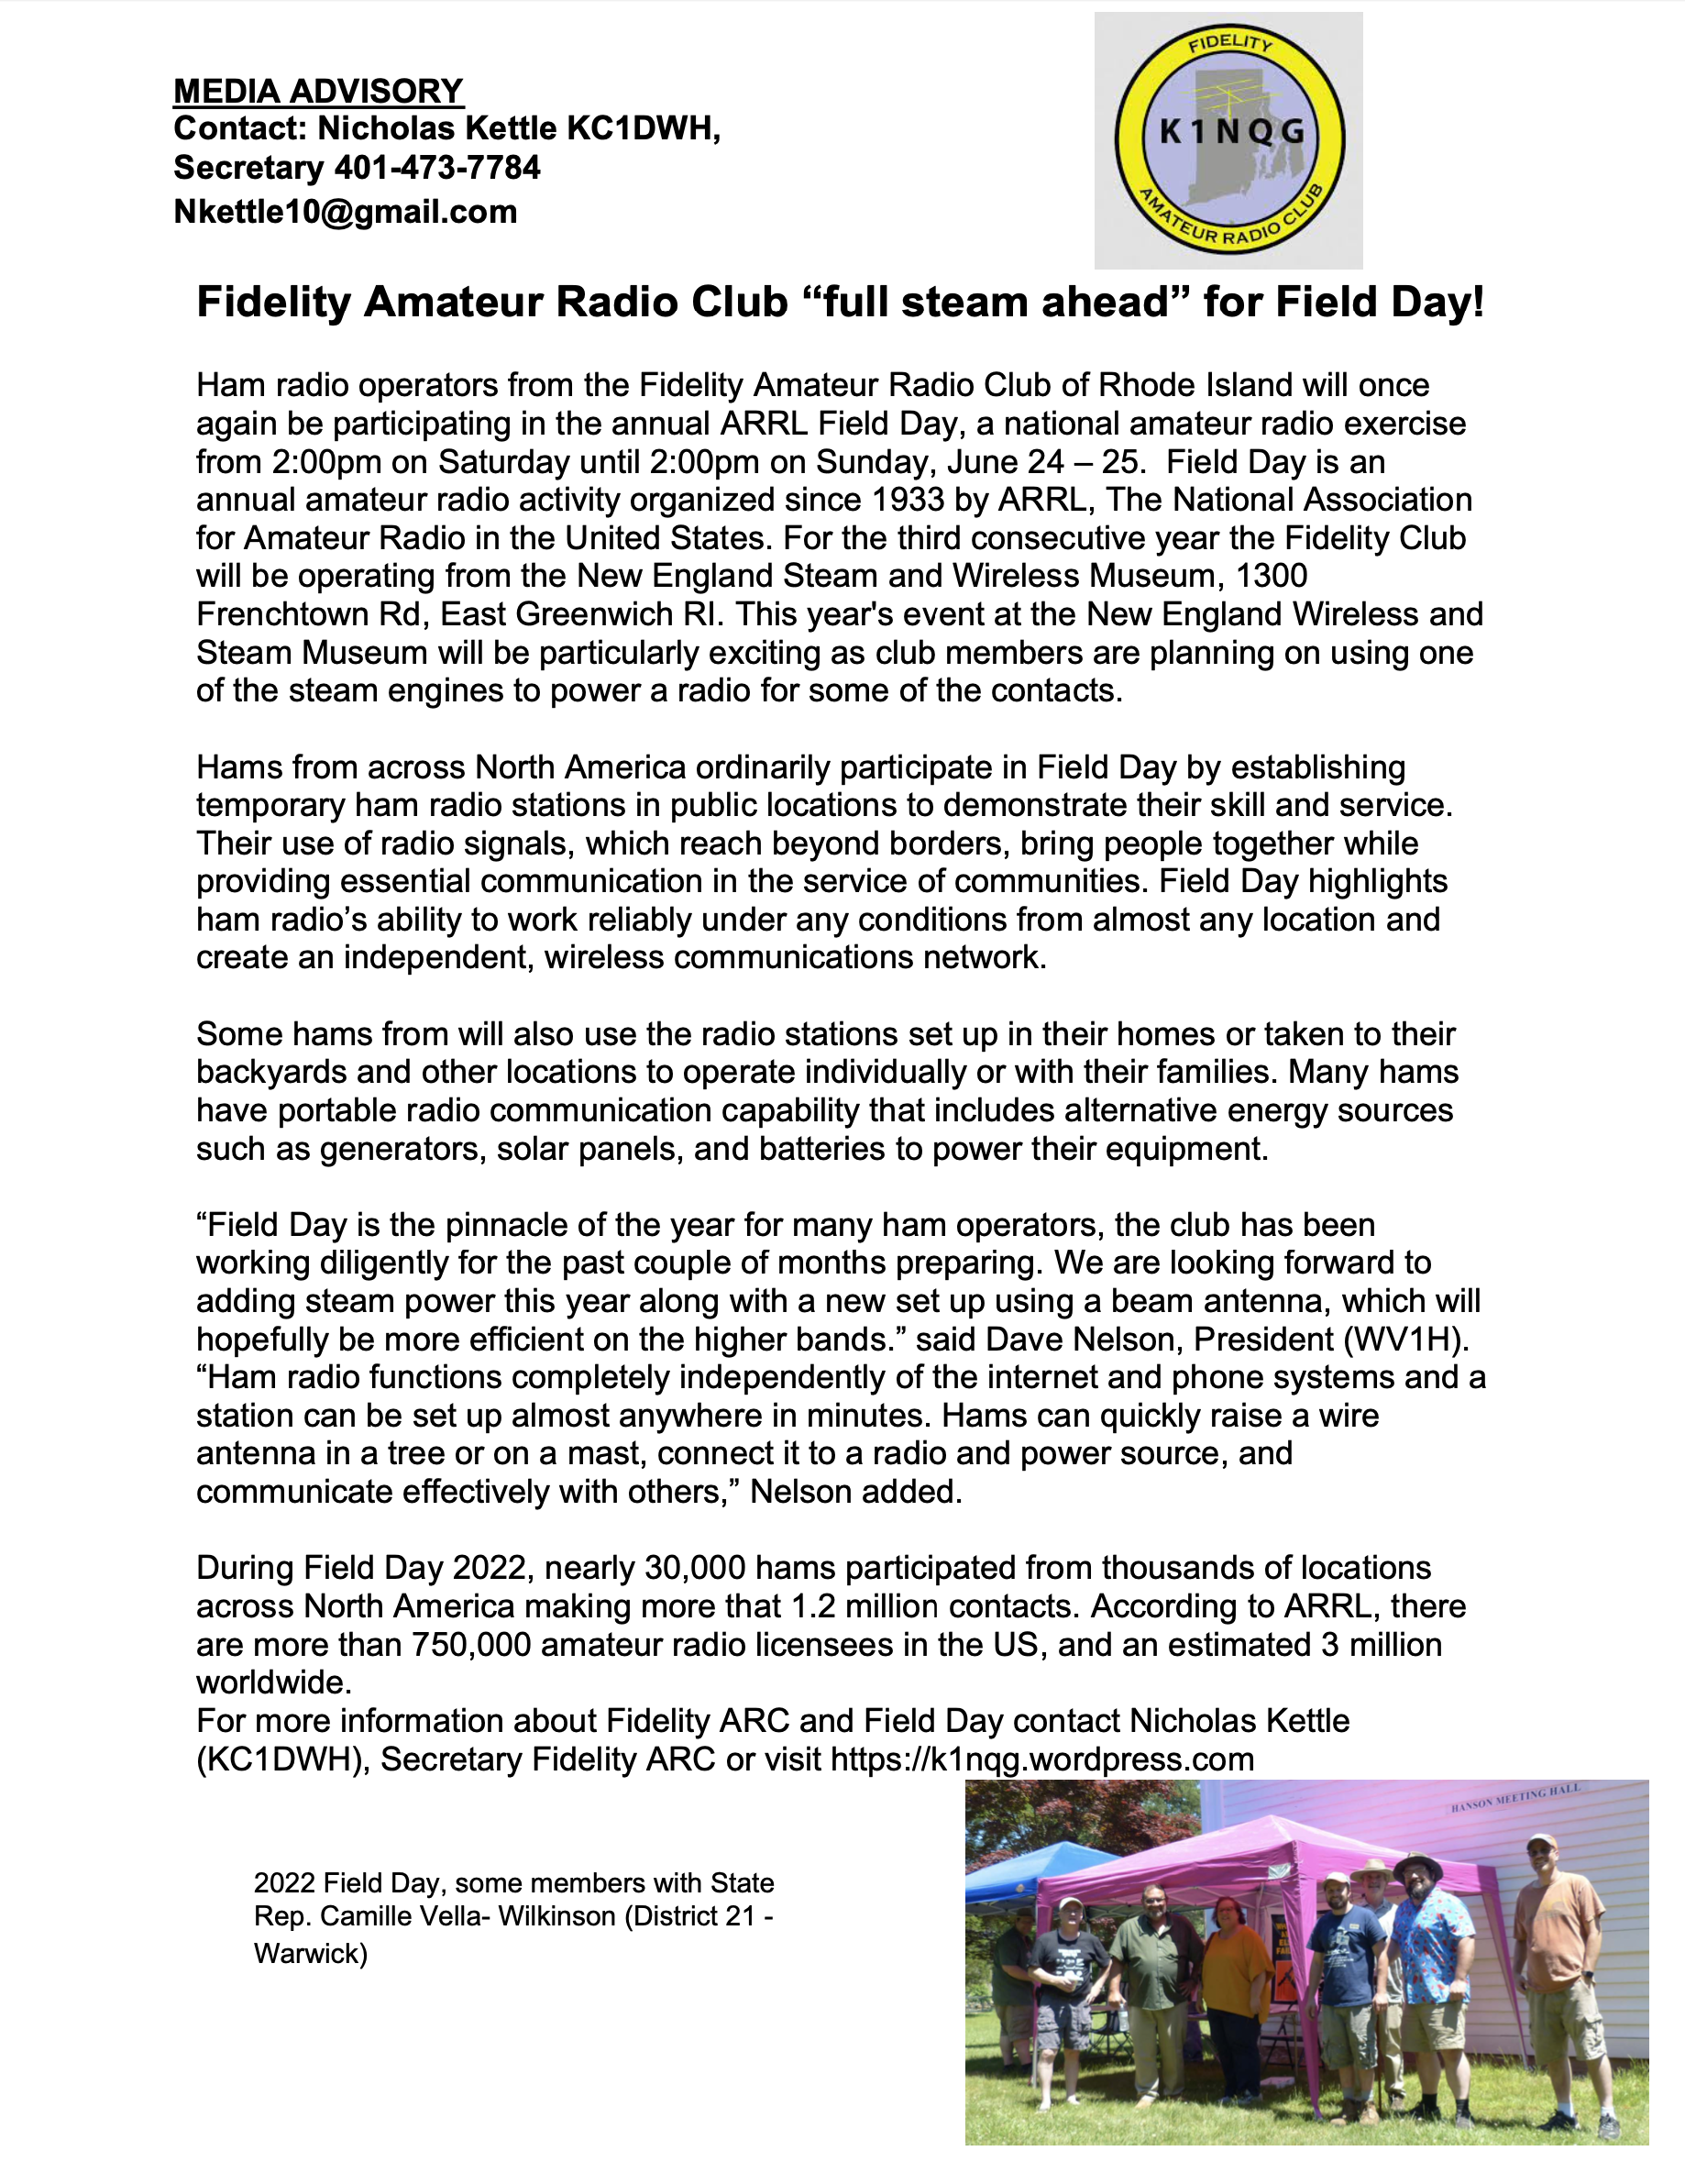 Fidelity ARC Field Day announcement, E. Greenwich RI